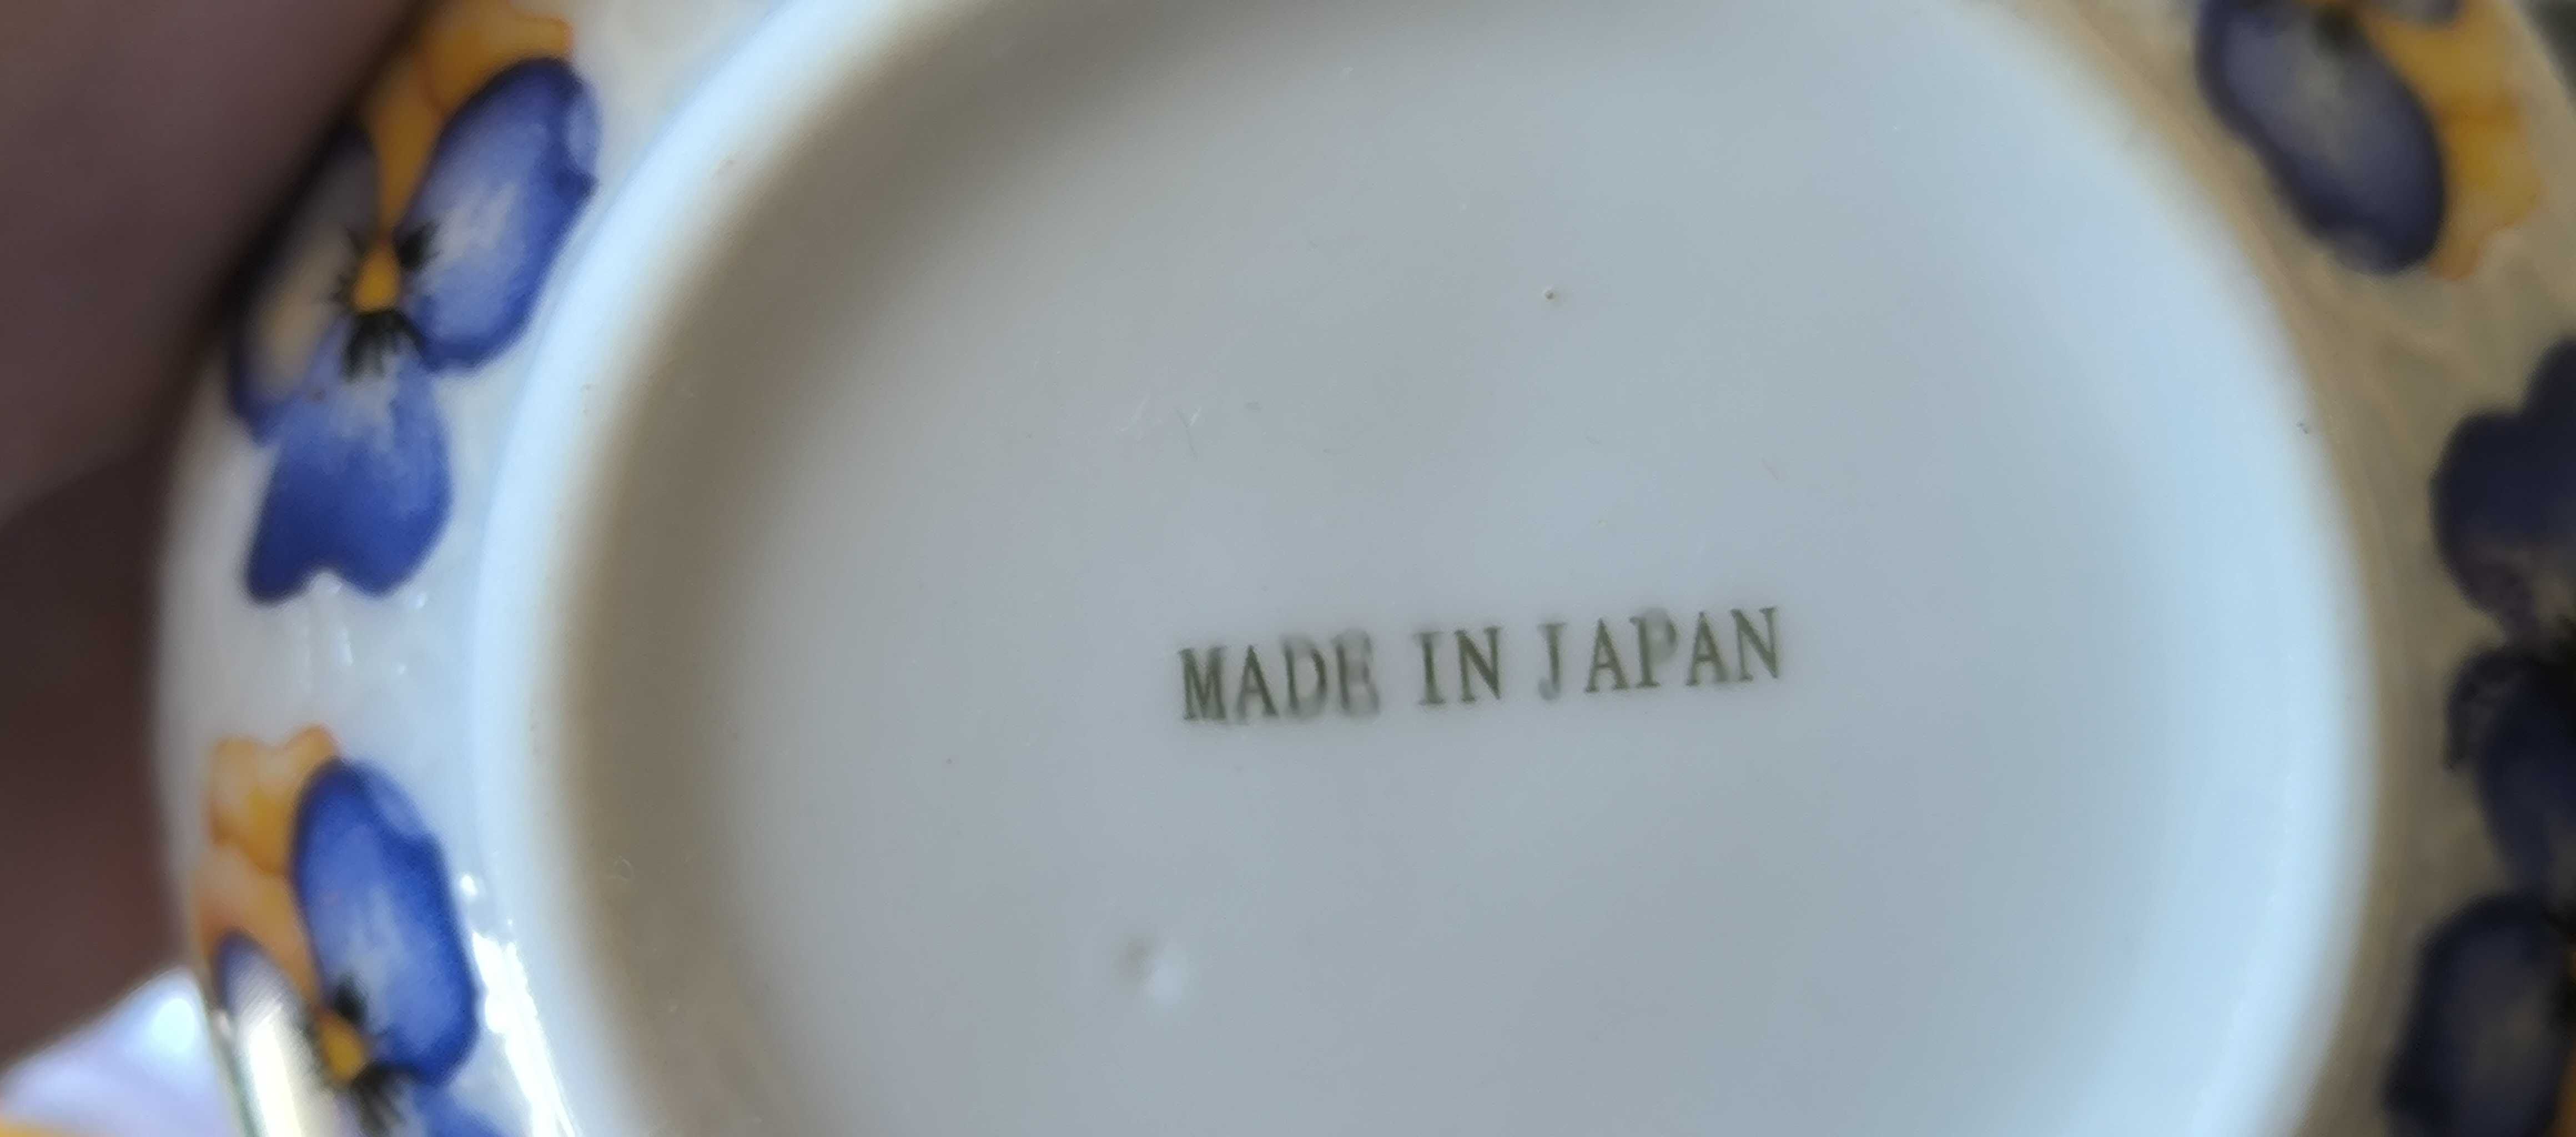 Японский чайный сервиз